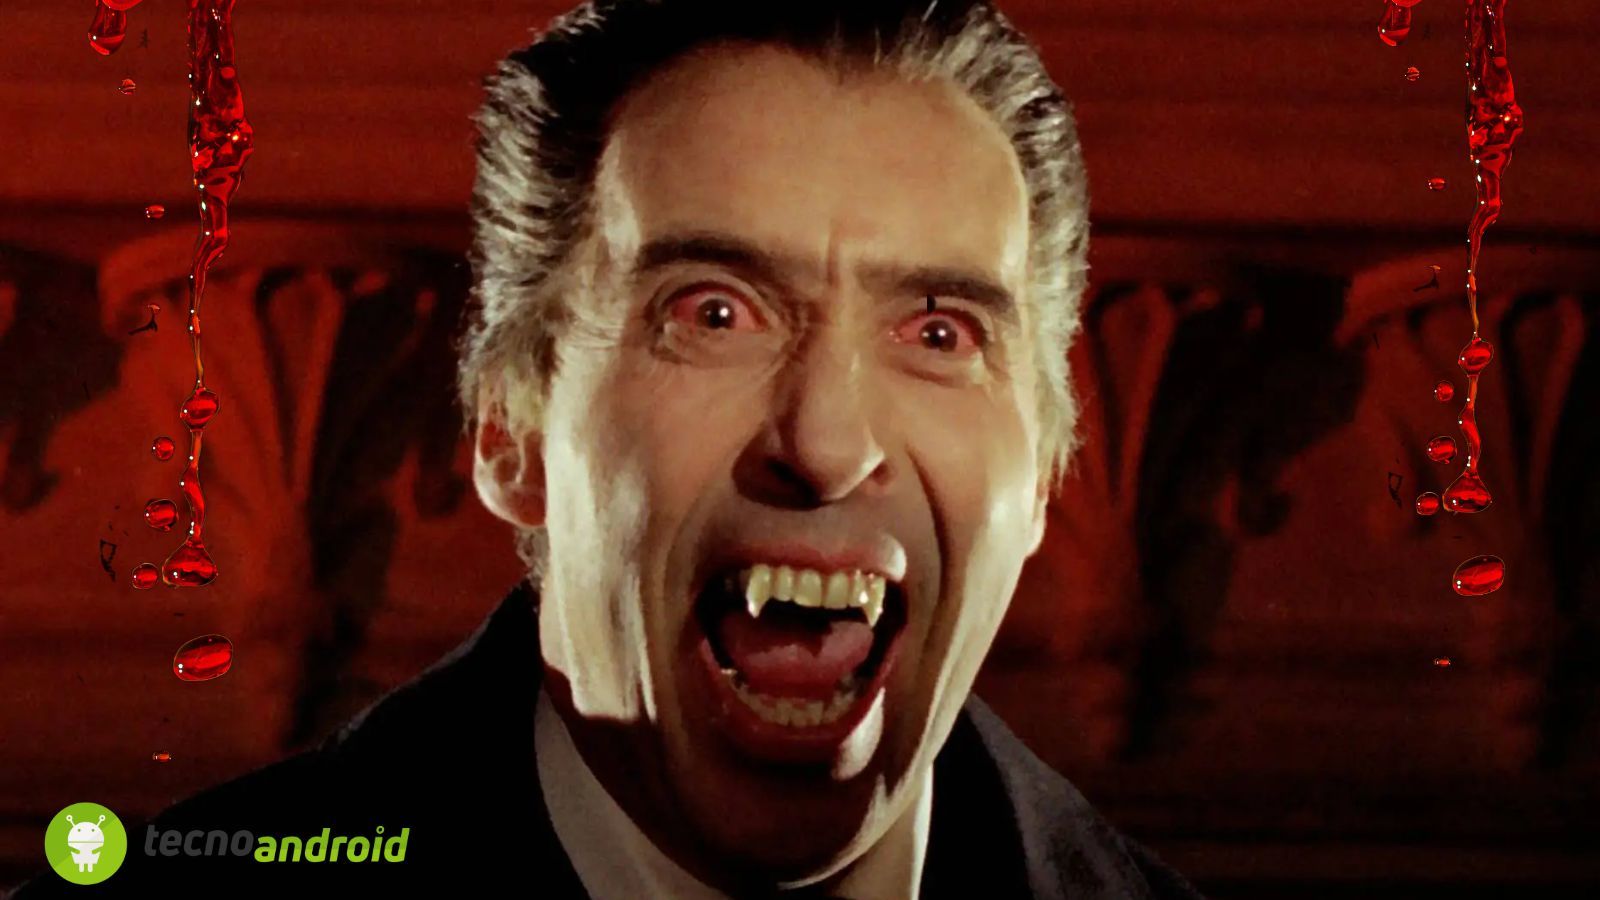 Vlad l'Impalatore - Dracula emolacria